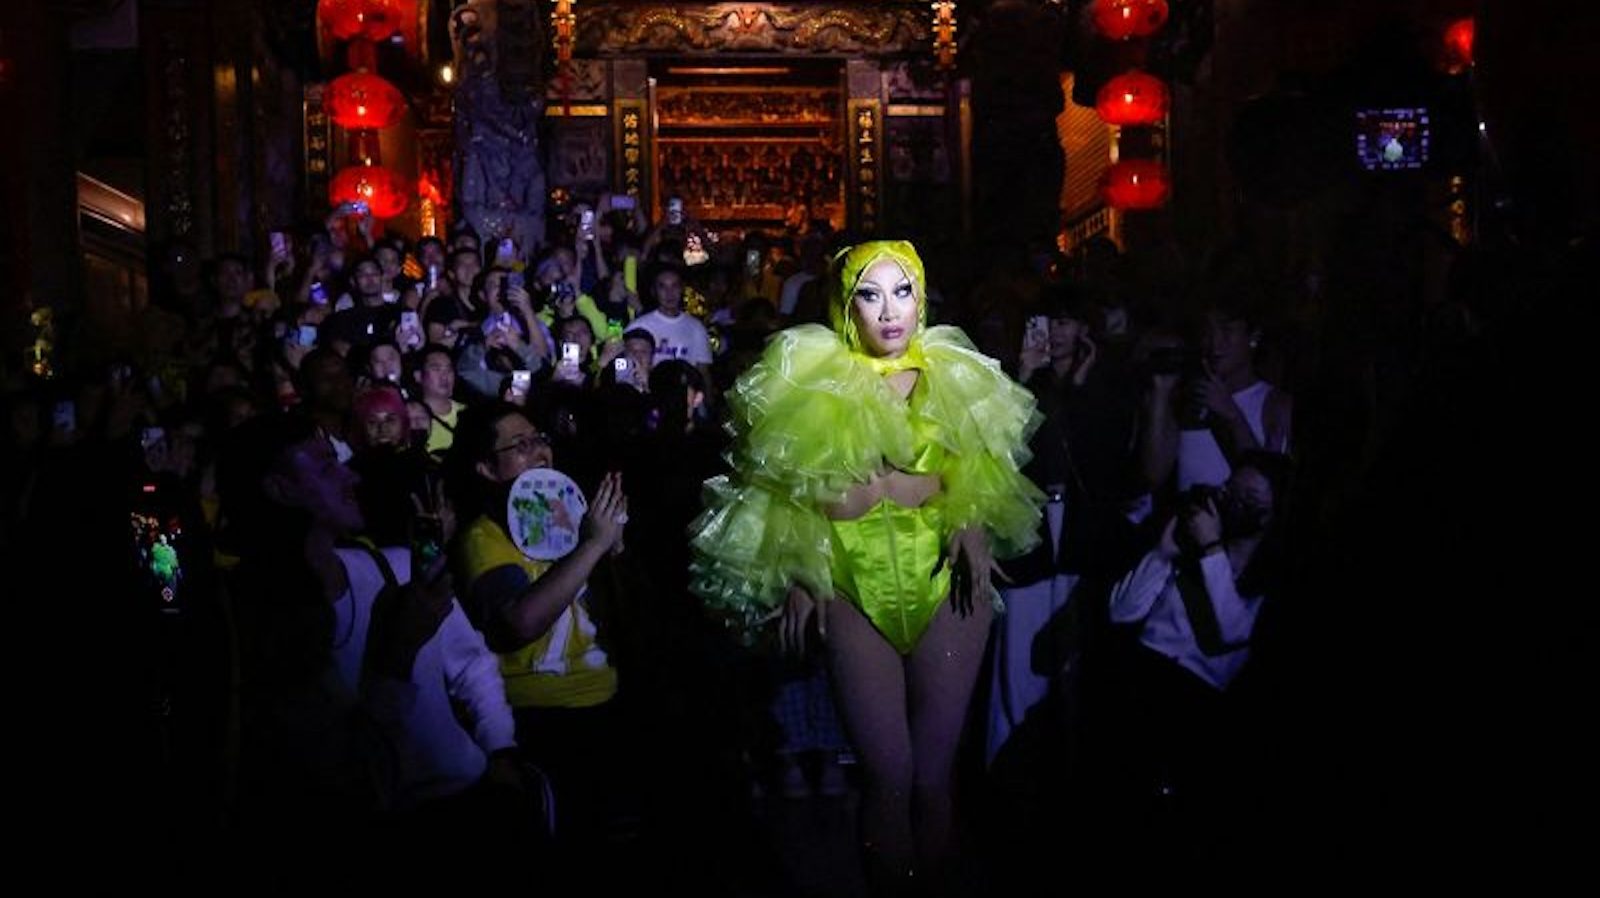 Drag queen ganadora de "RuPaul's Drag Race" recibe los elogios de la
presidenta de Taiwán